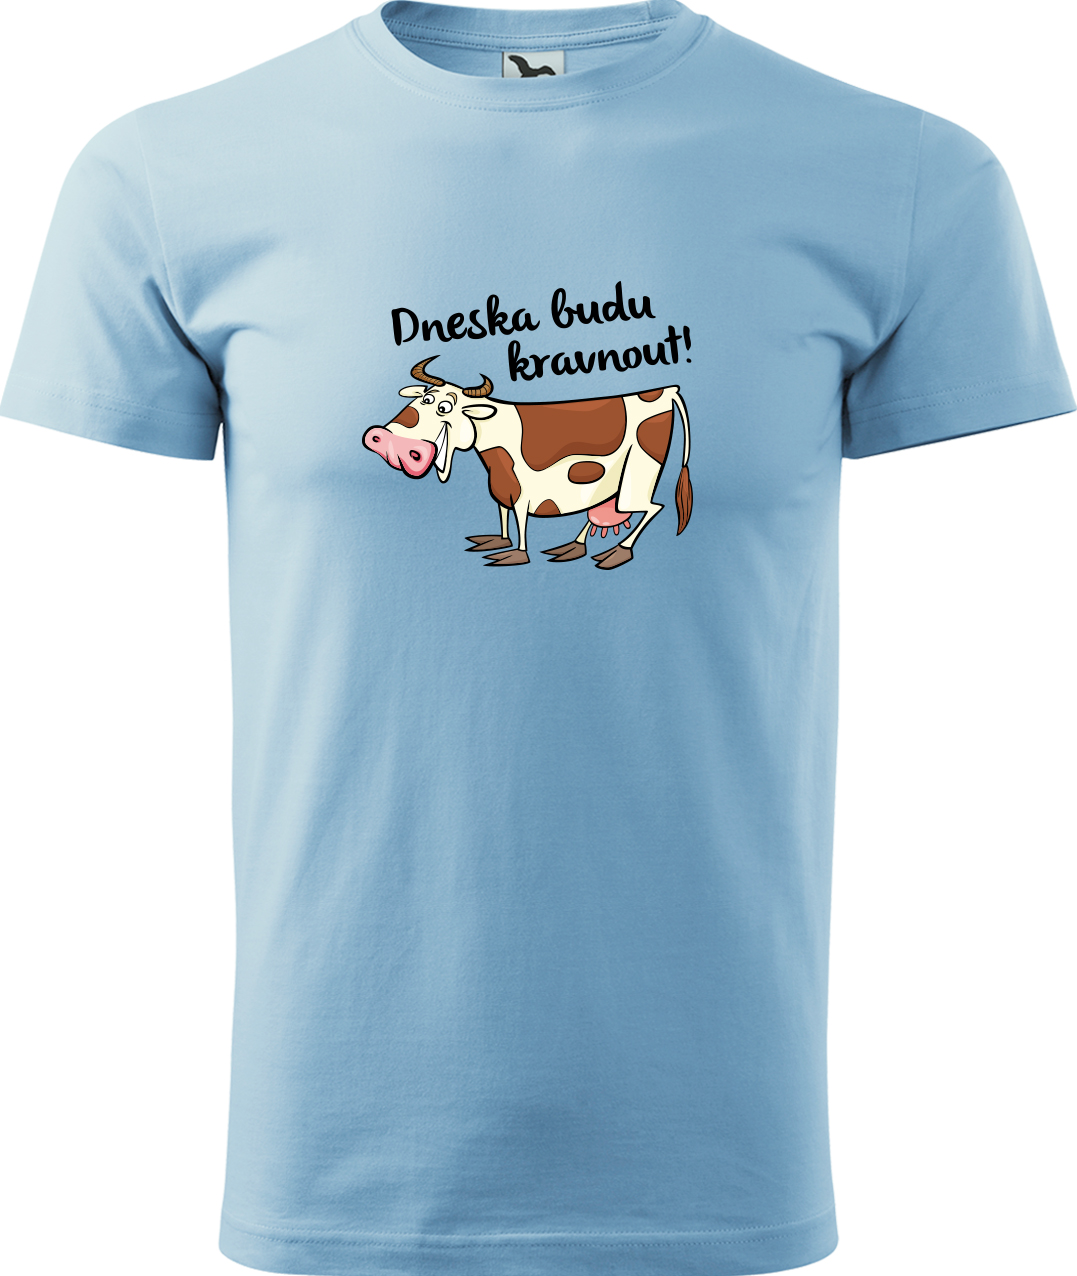 Pánské tričko s krávou - Dneska budu kravnout! Velikost: M, Barva: Nebesky modrá (15), Střih: pánský